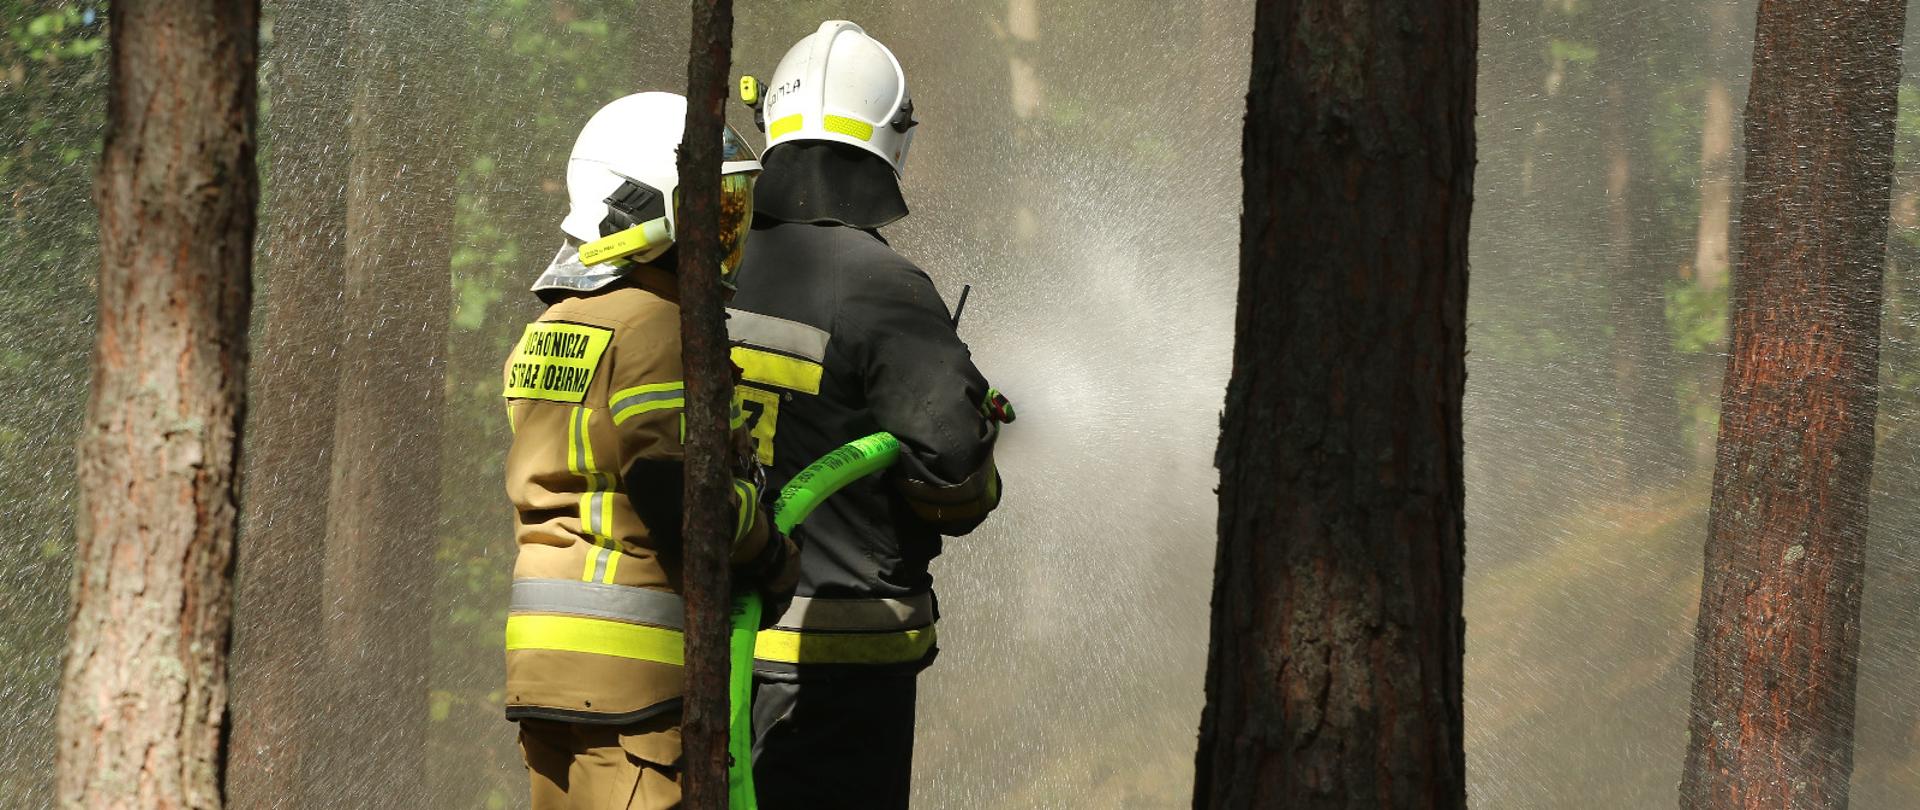 W lesie pomiędzy drzewami stoi dwóch strażaków w mundurach i białych hełmach, Leją wodę z węża strażackiego.